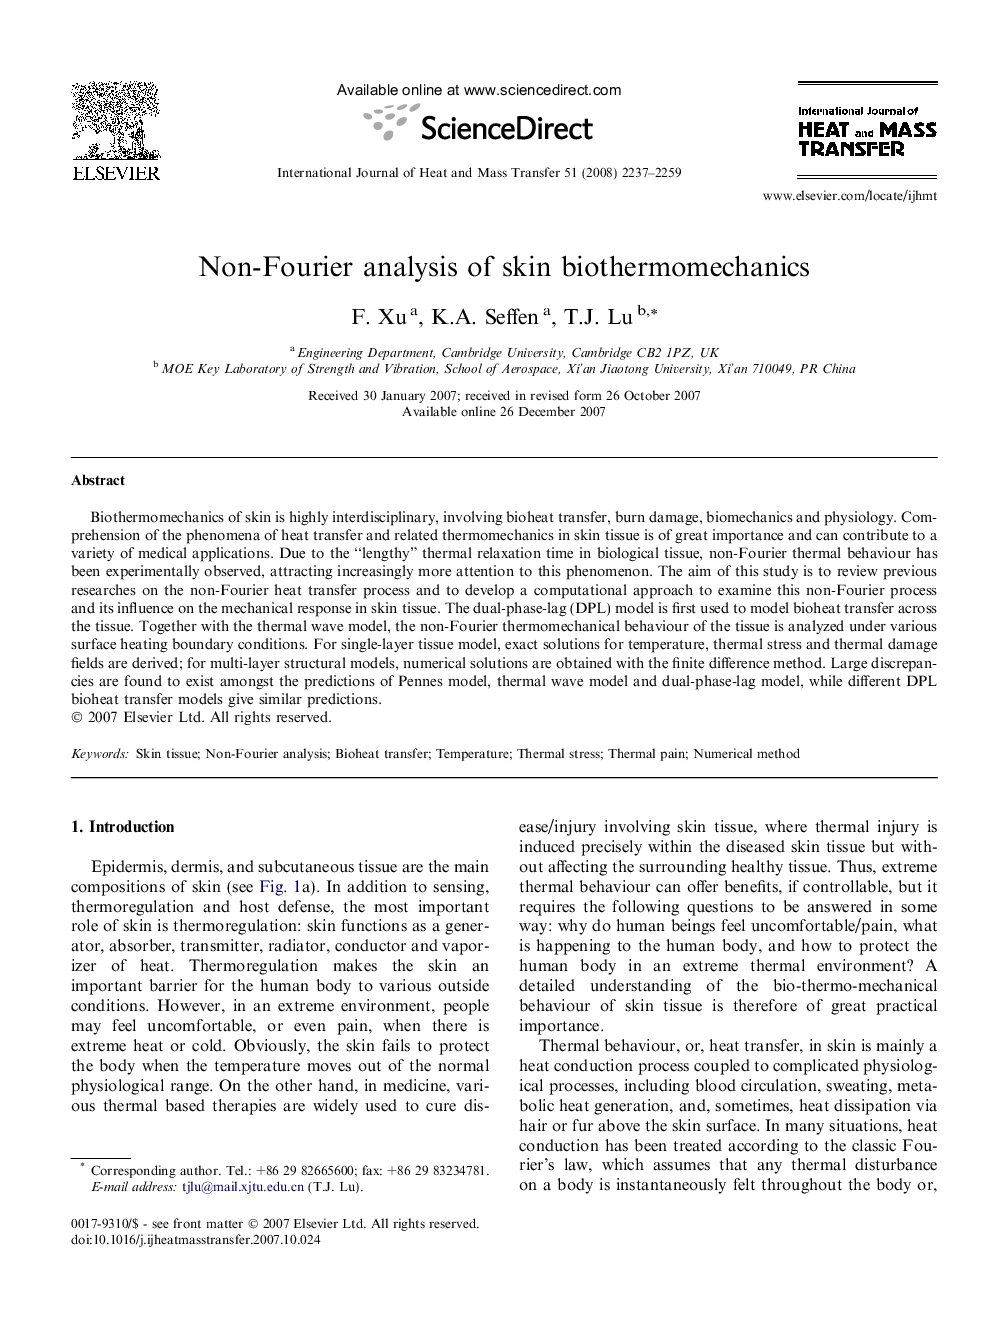 Non-Fourier analysis of skin biothermomechanics